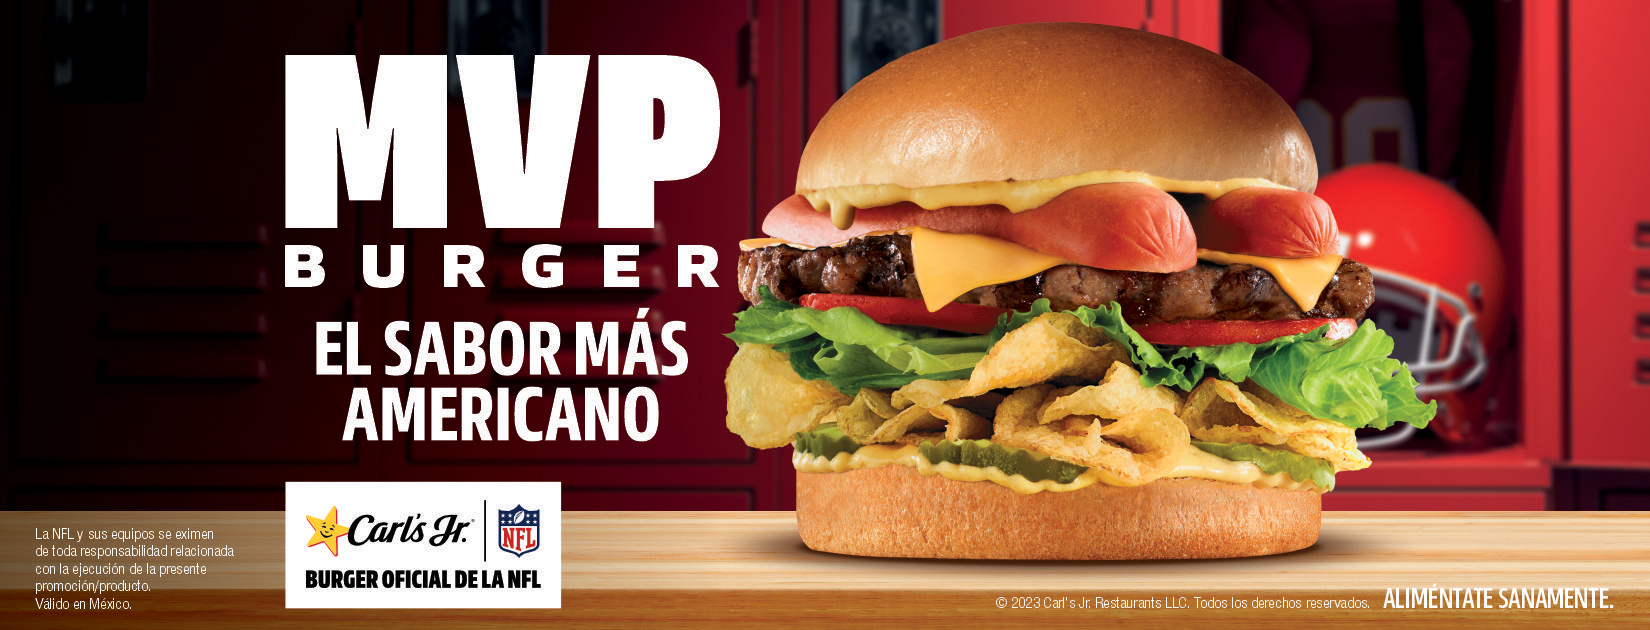 Directo al Salón de la Fama del sabor! Así es la nueva MVP Burger de Carl’s Jr.